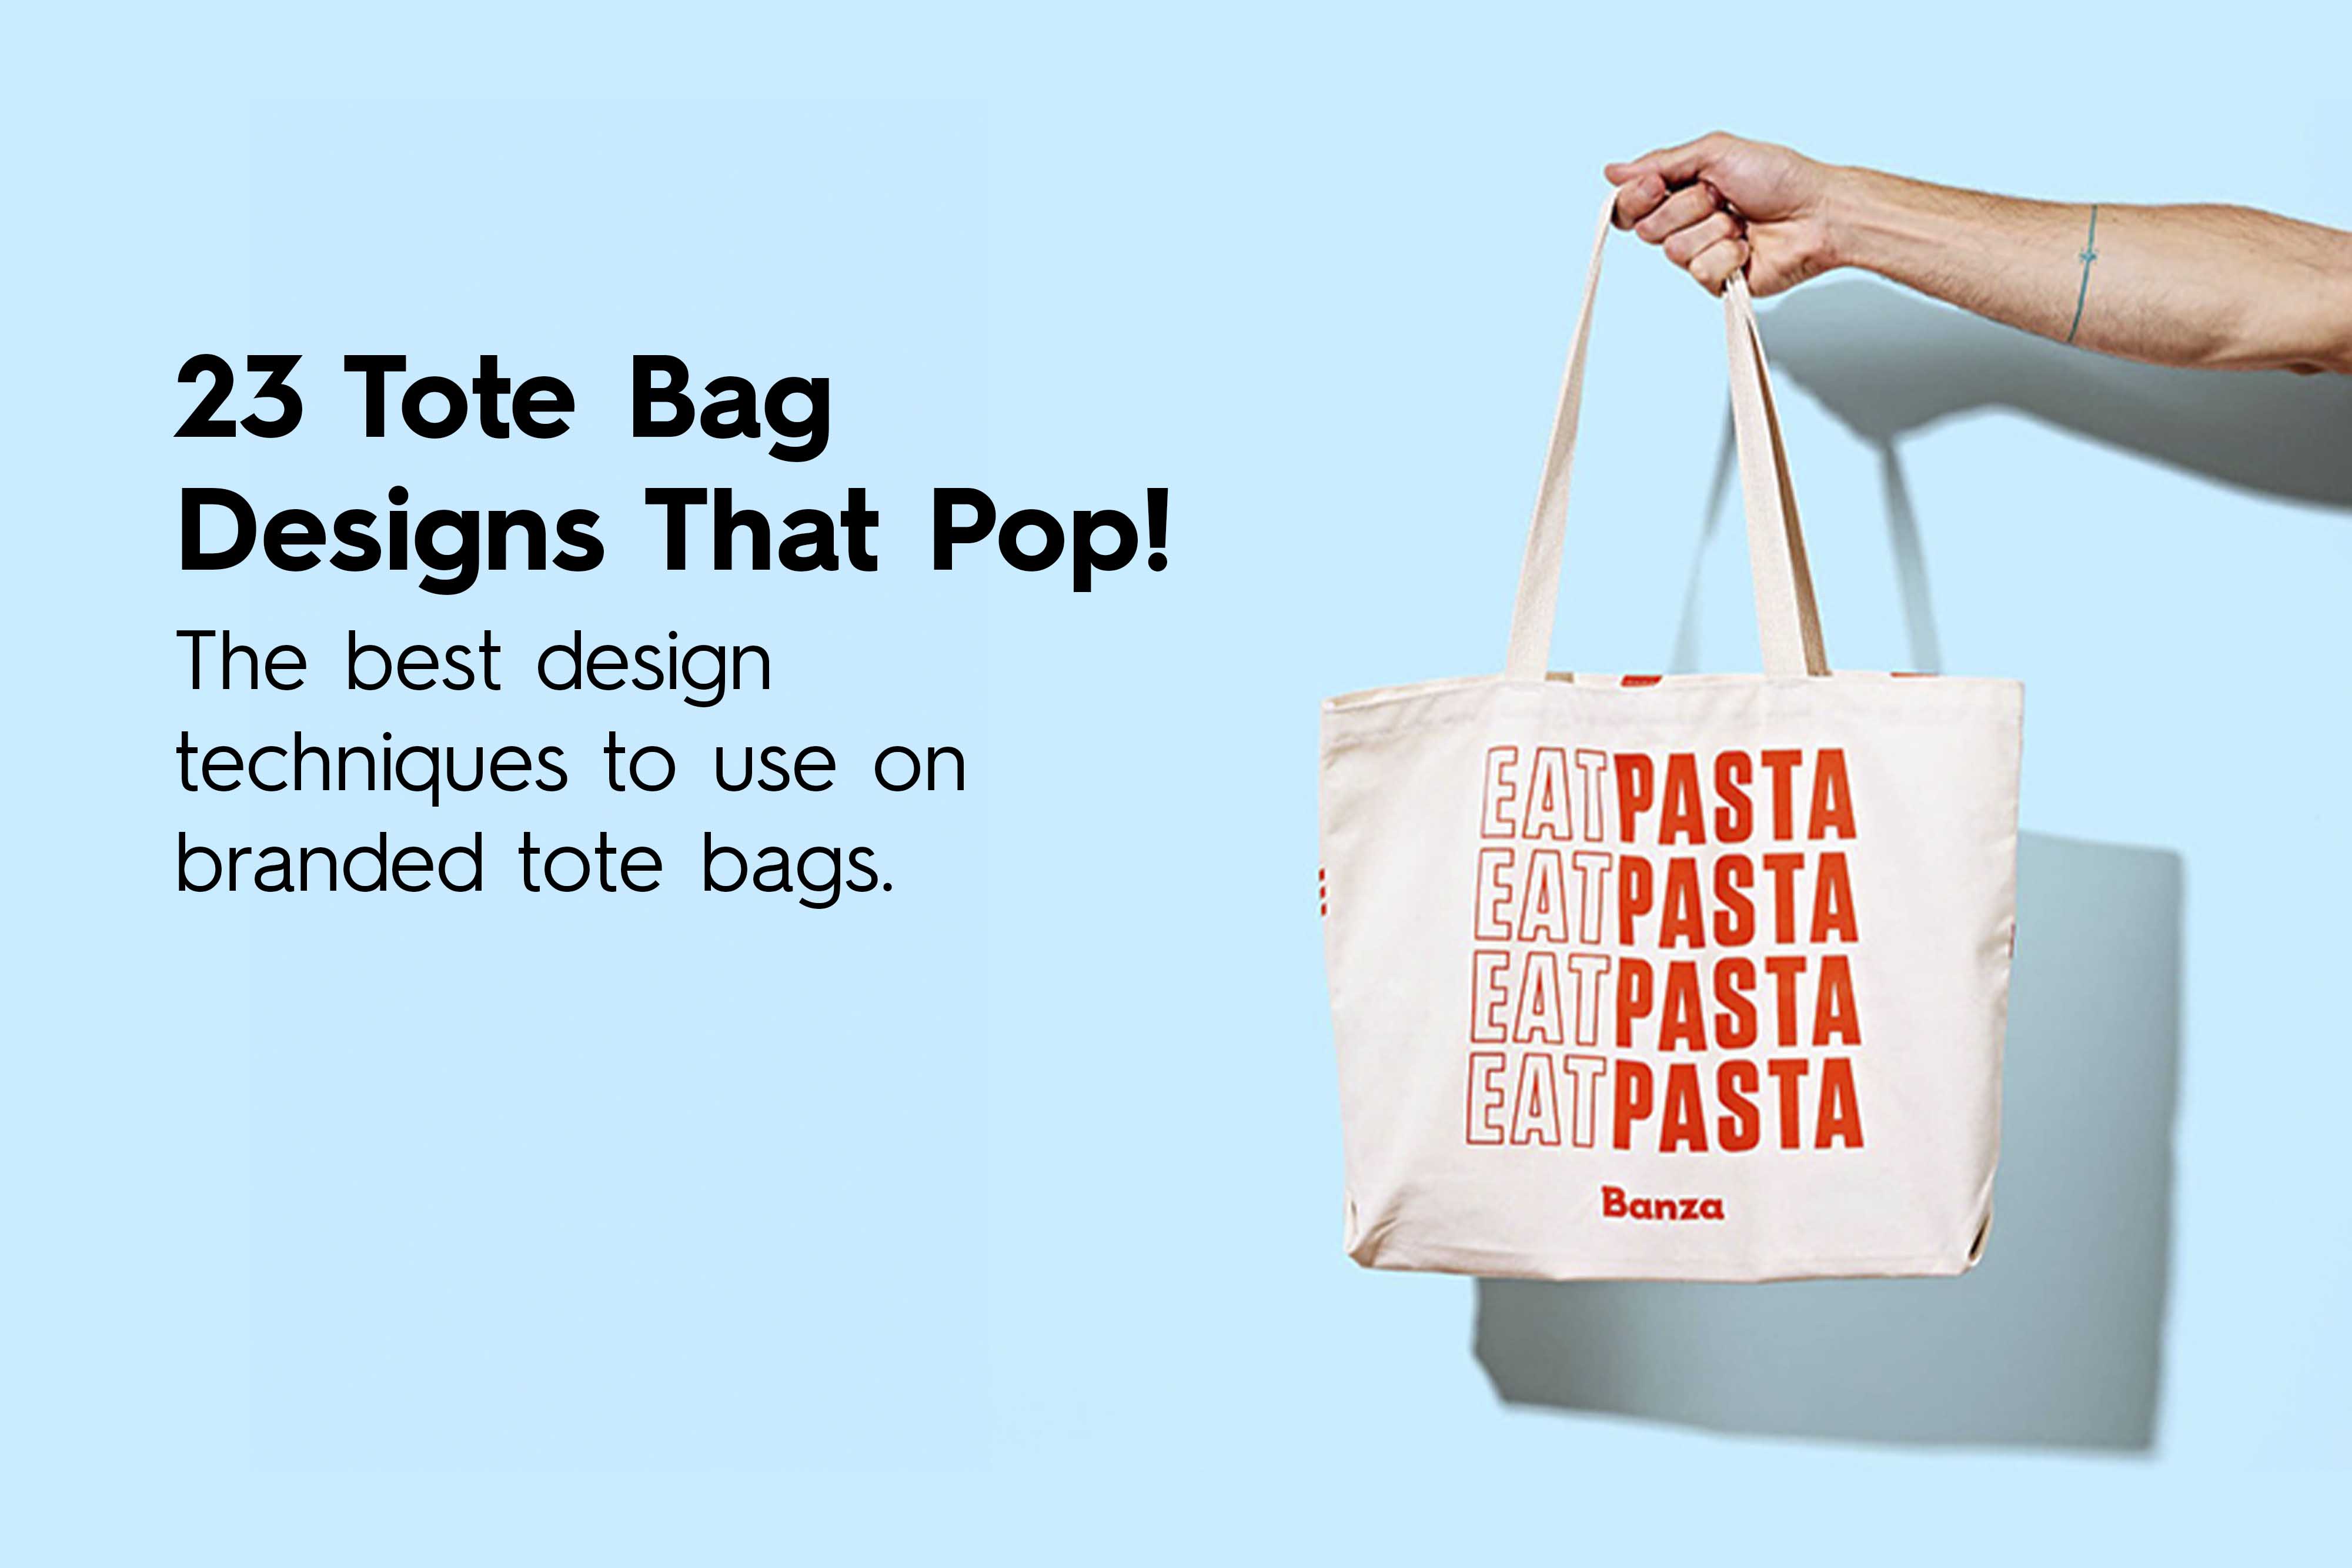 25-tote-bag-designs-that-pop_design-techniques